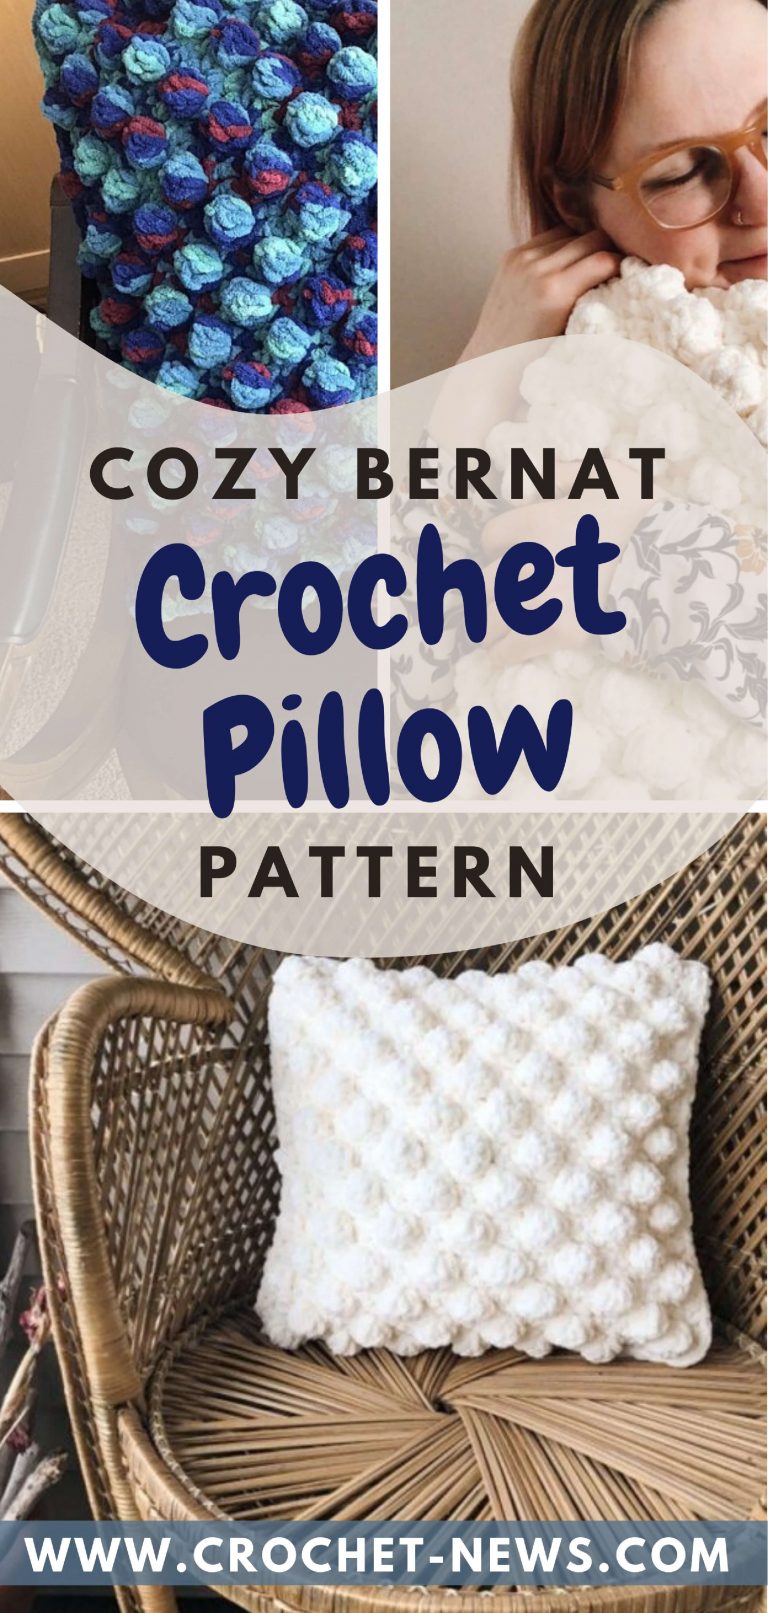 Cozy Bernat Crochet Pillow Patterns - Crochet News